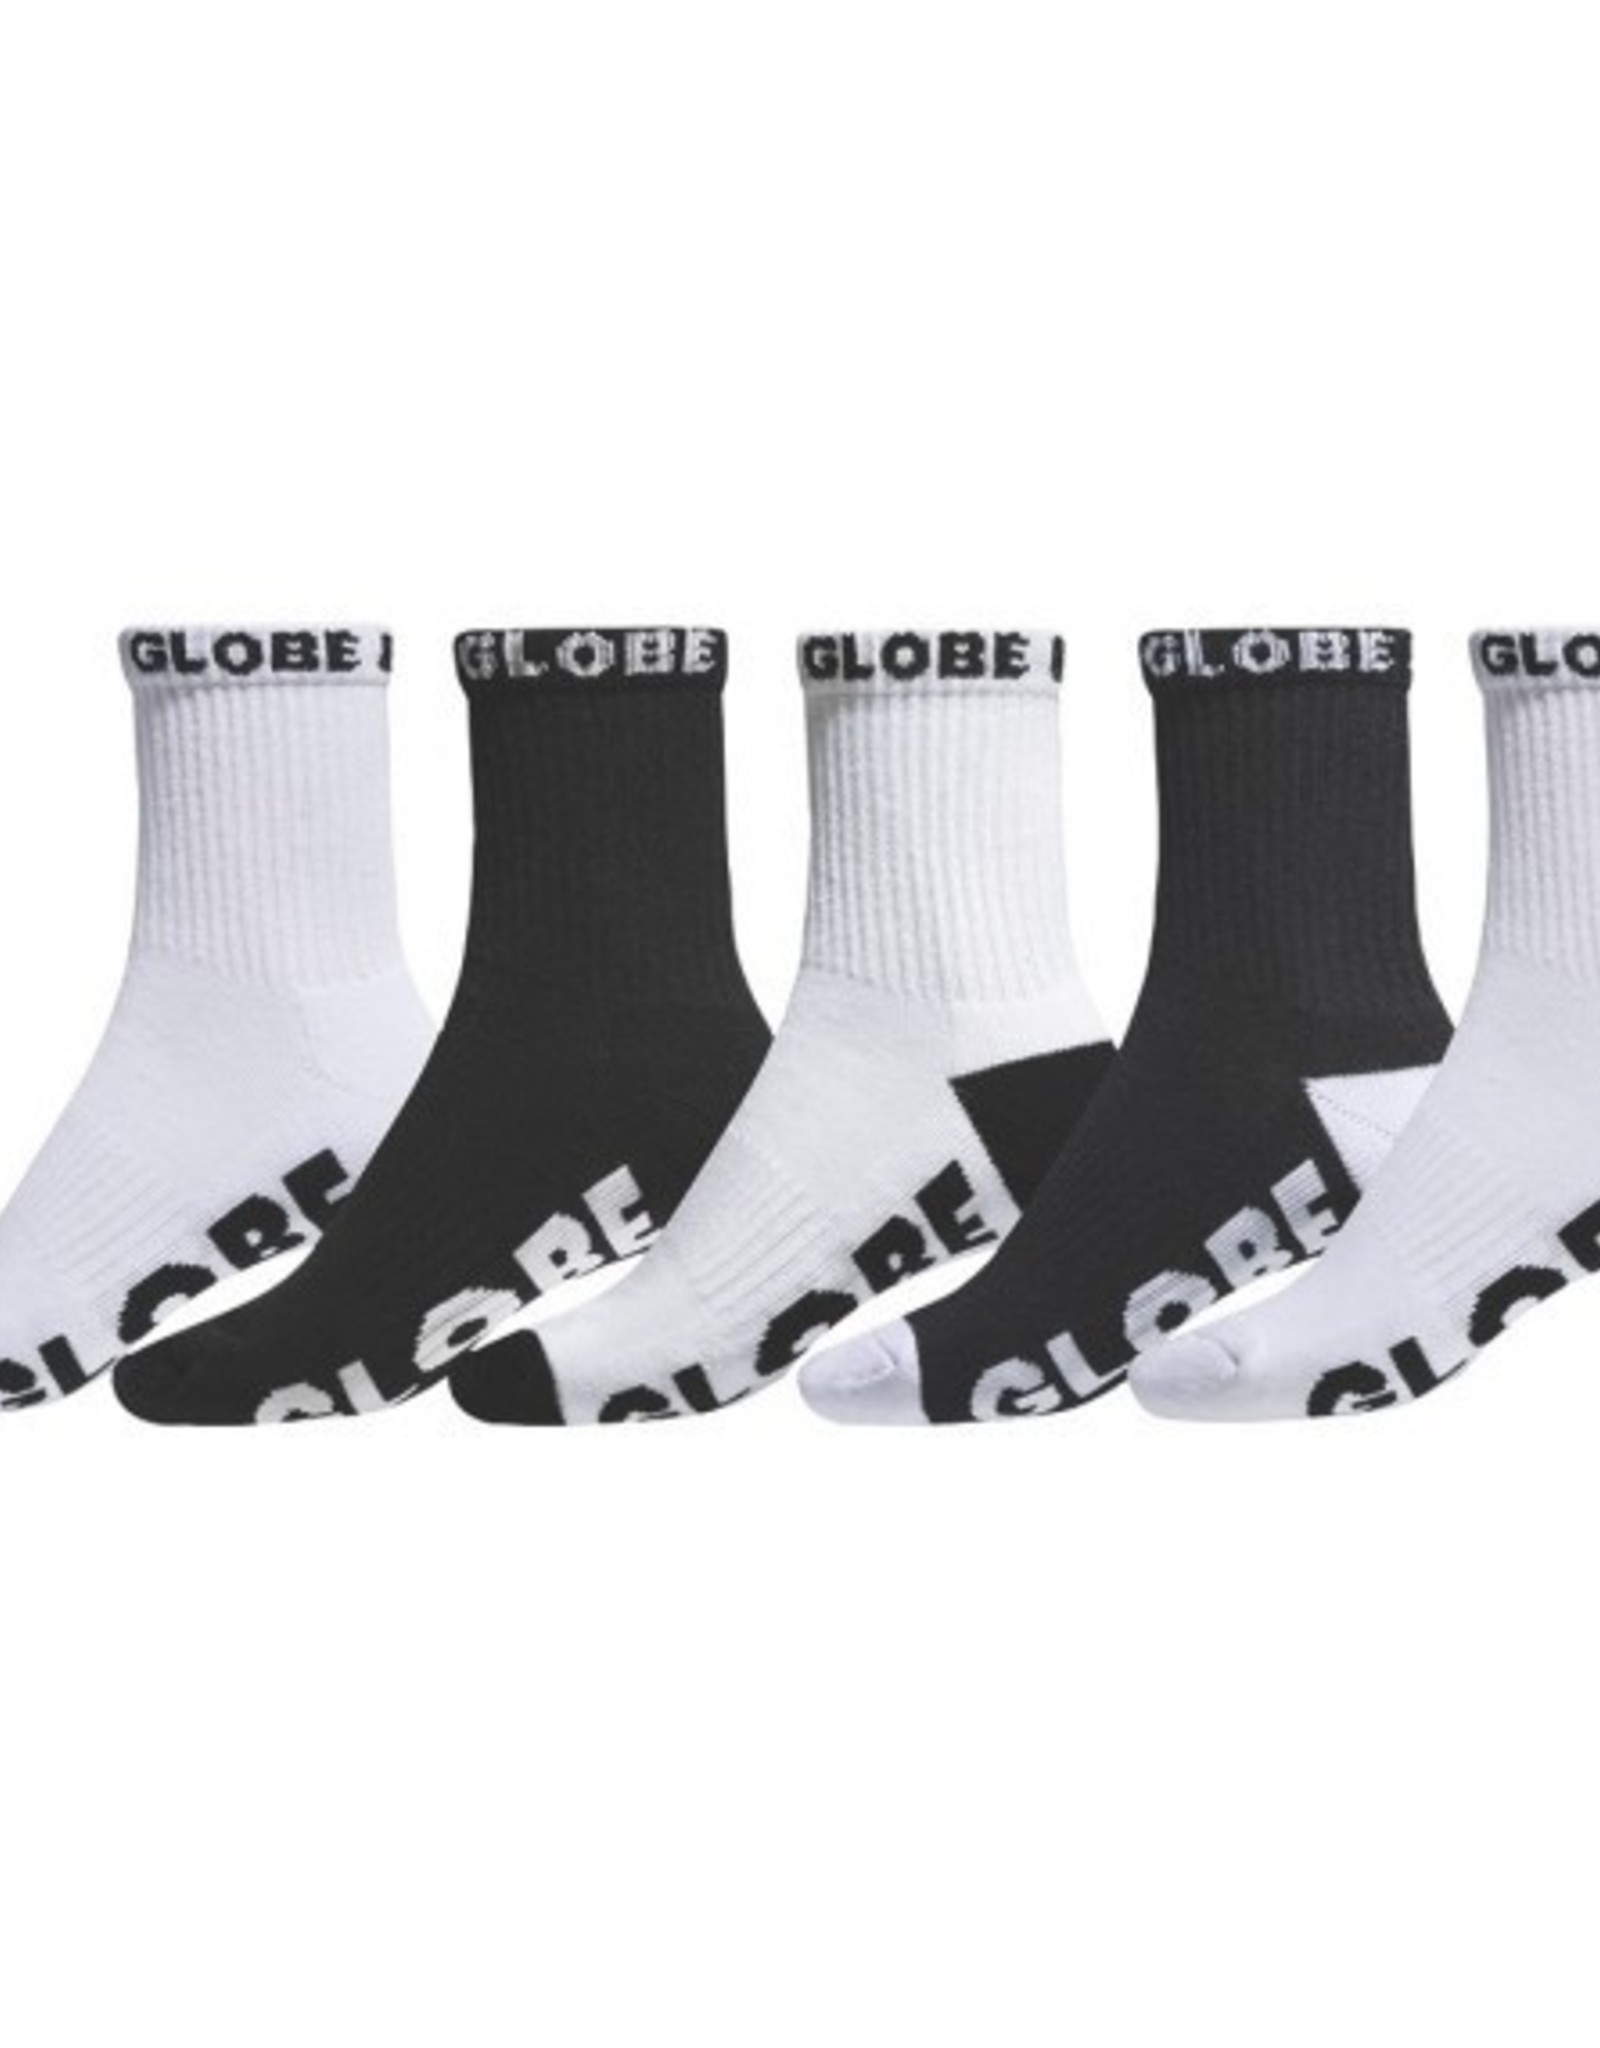 GLOBE Kids 5 Pack Socks Black/White 2-8